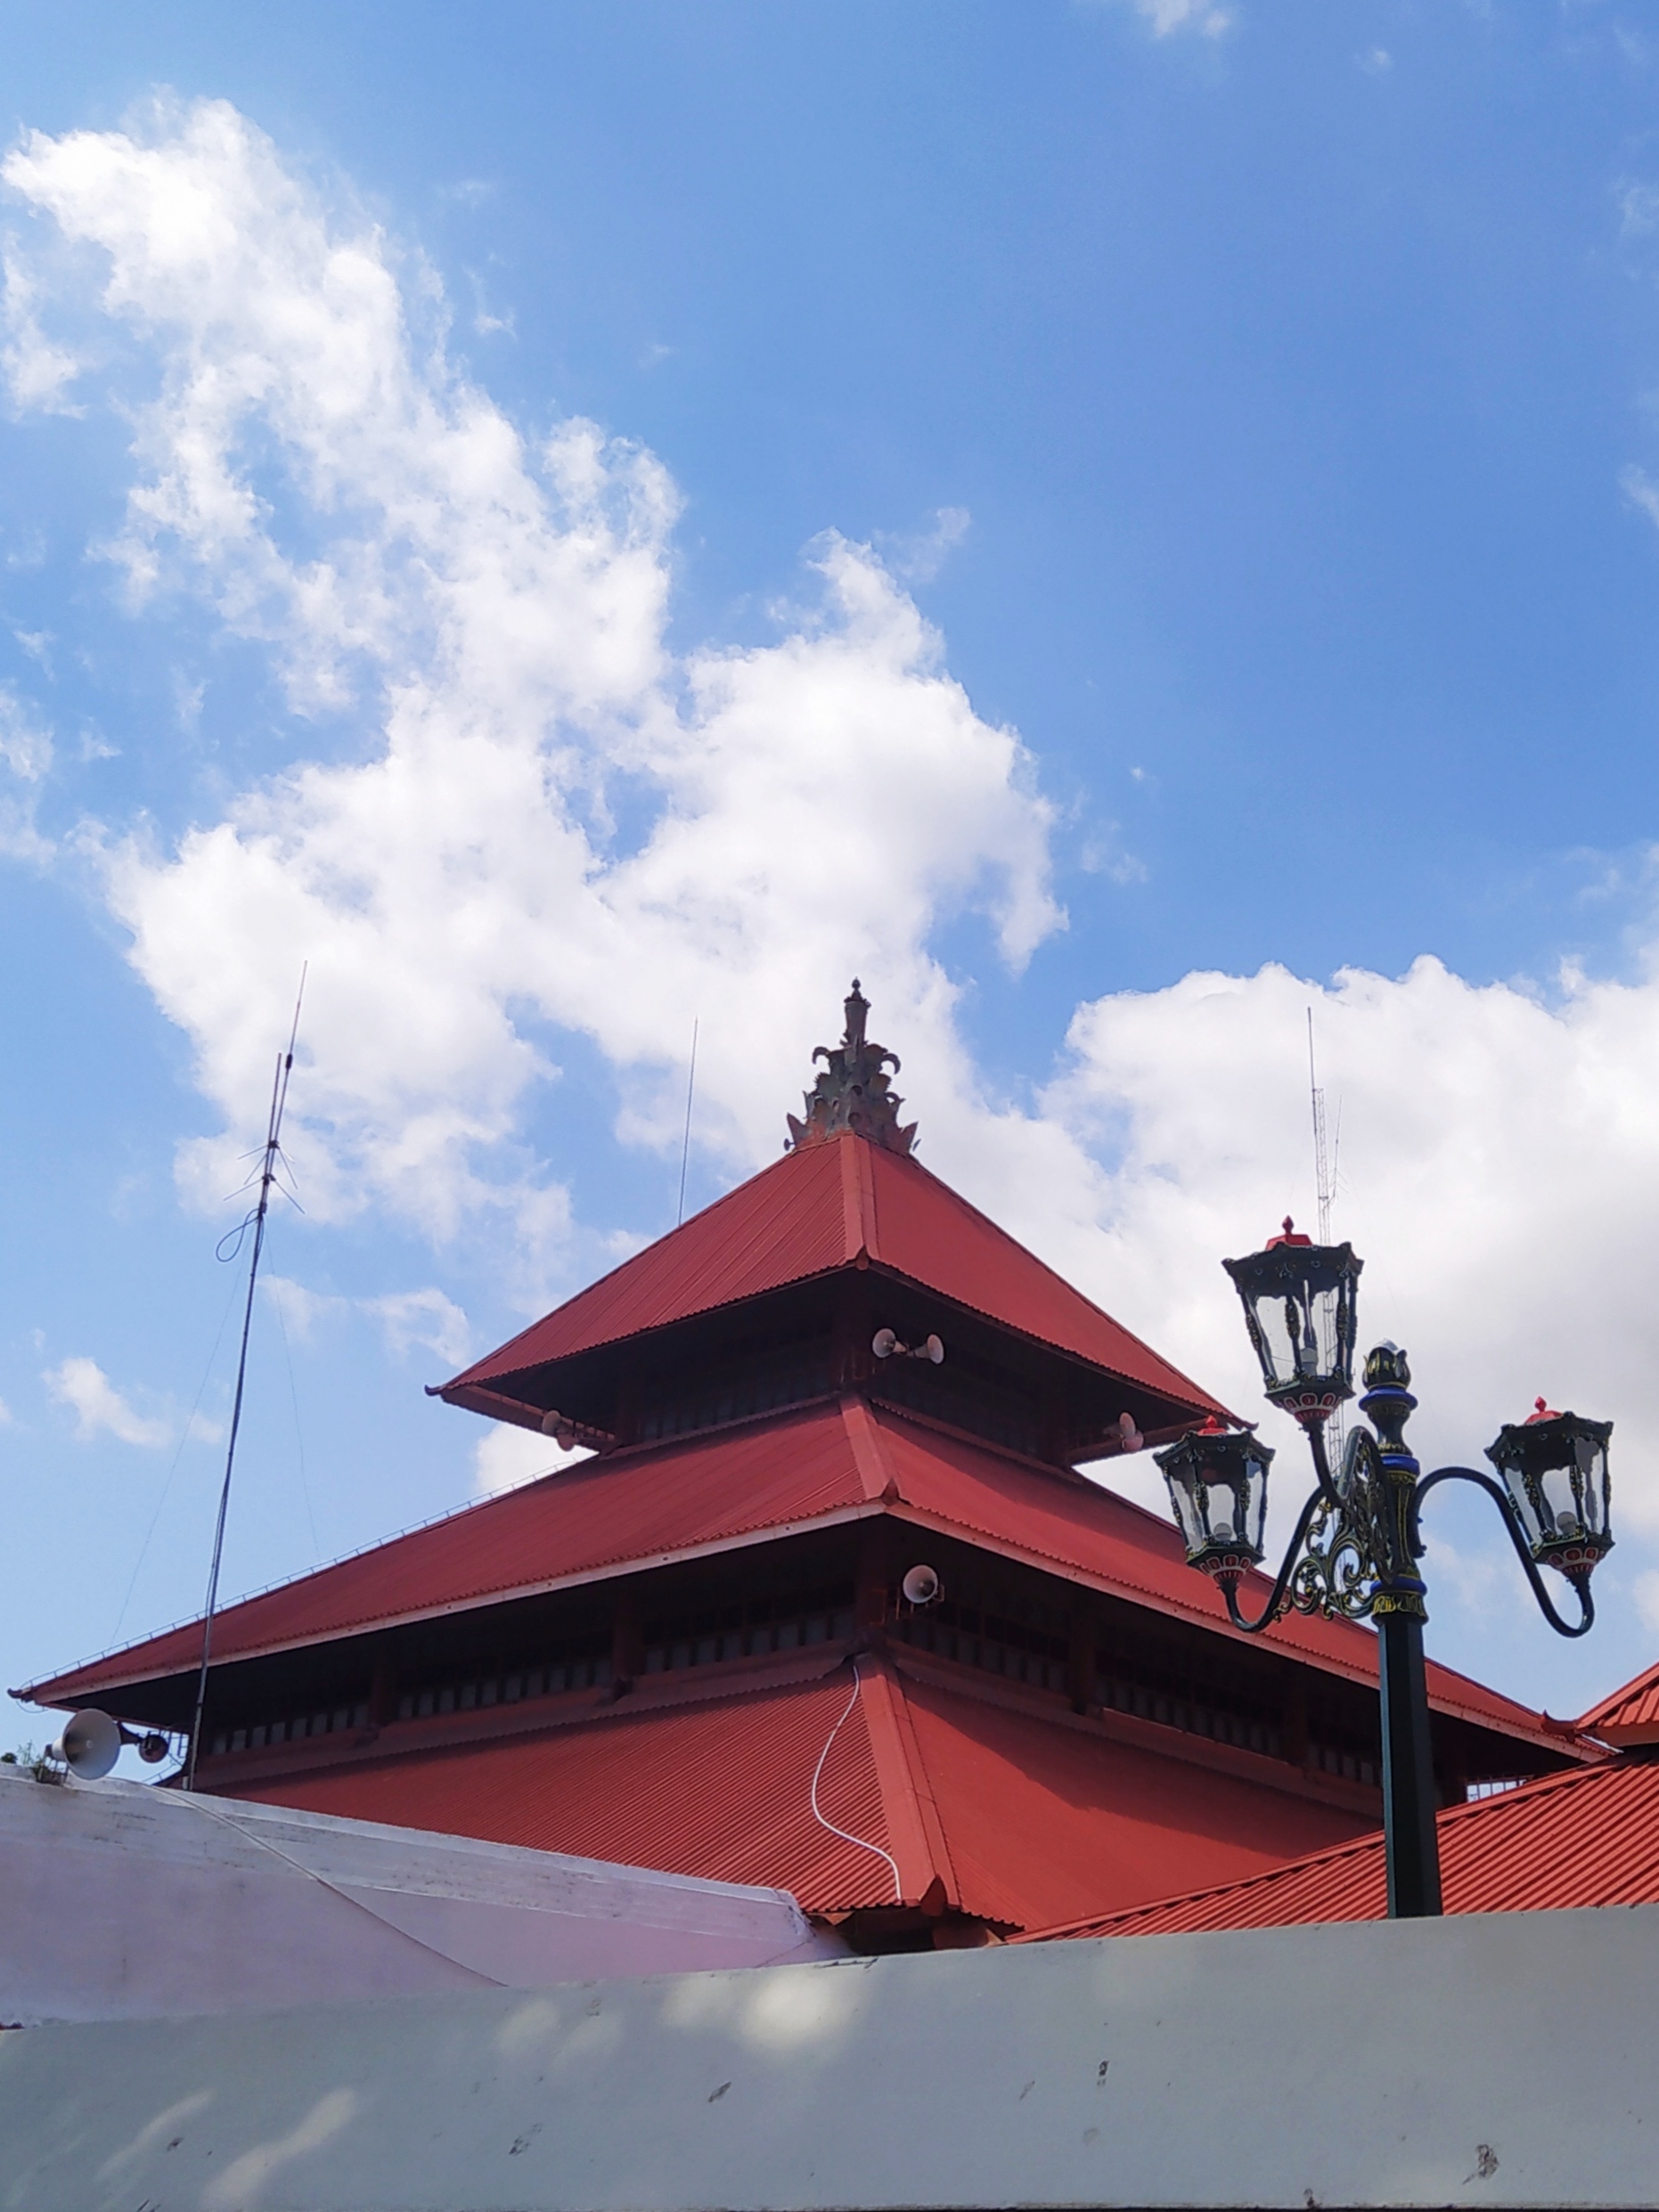 Atap Masjid Keraton Yogyakarta berbentuk tajug tumpang tiga